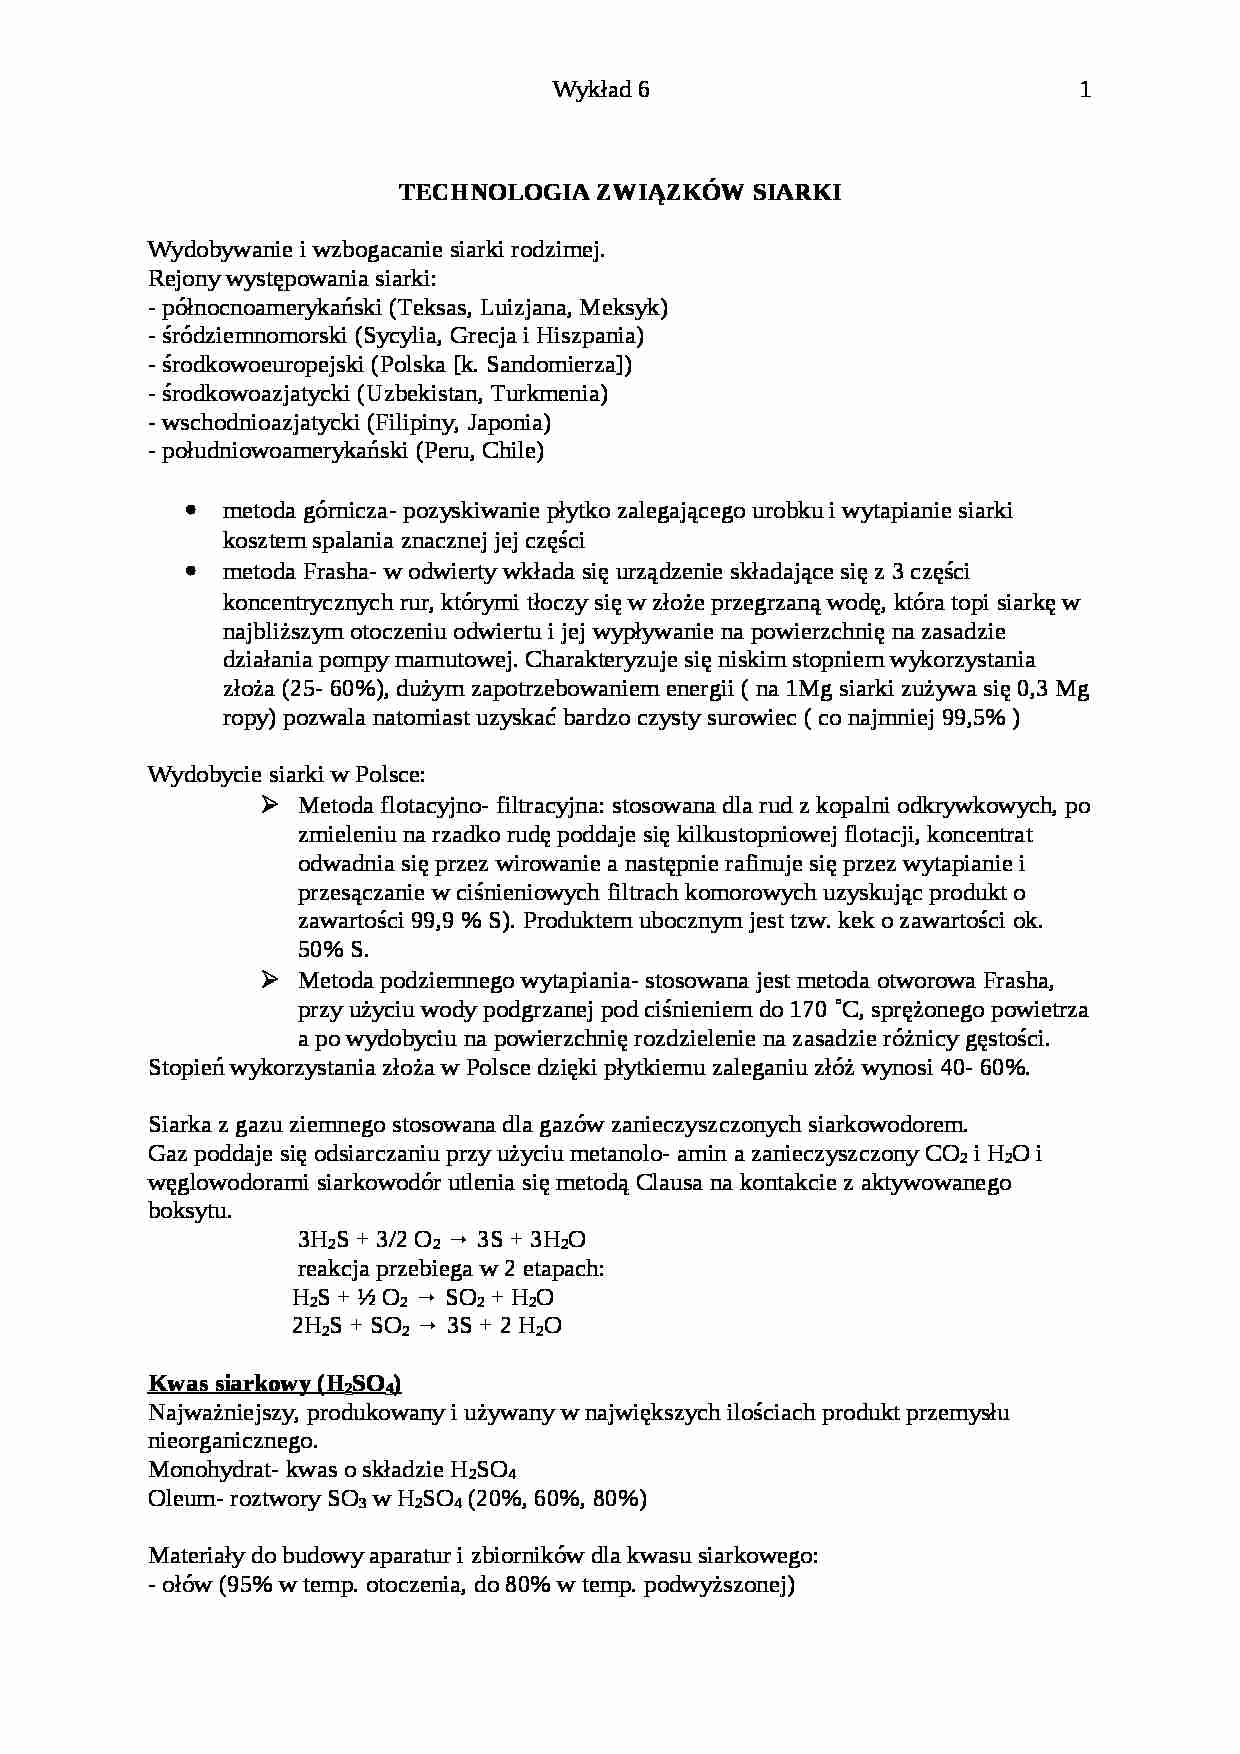 Technologia związków siarki-opracowanie - strona 1